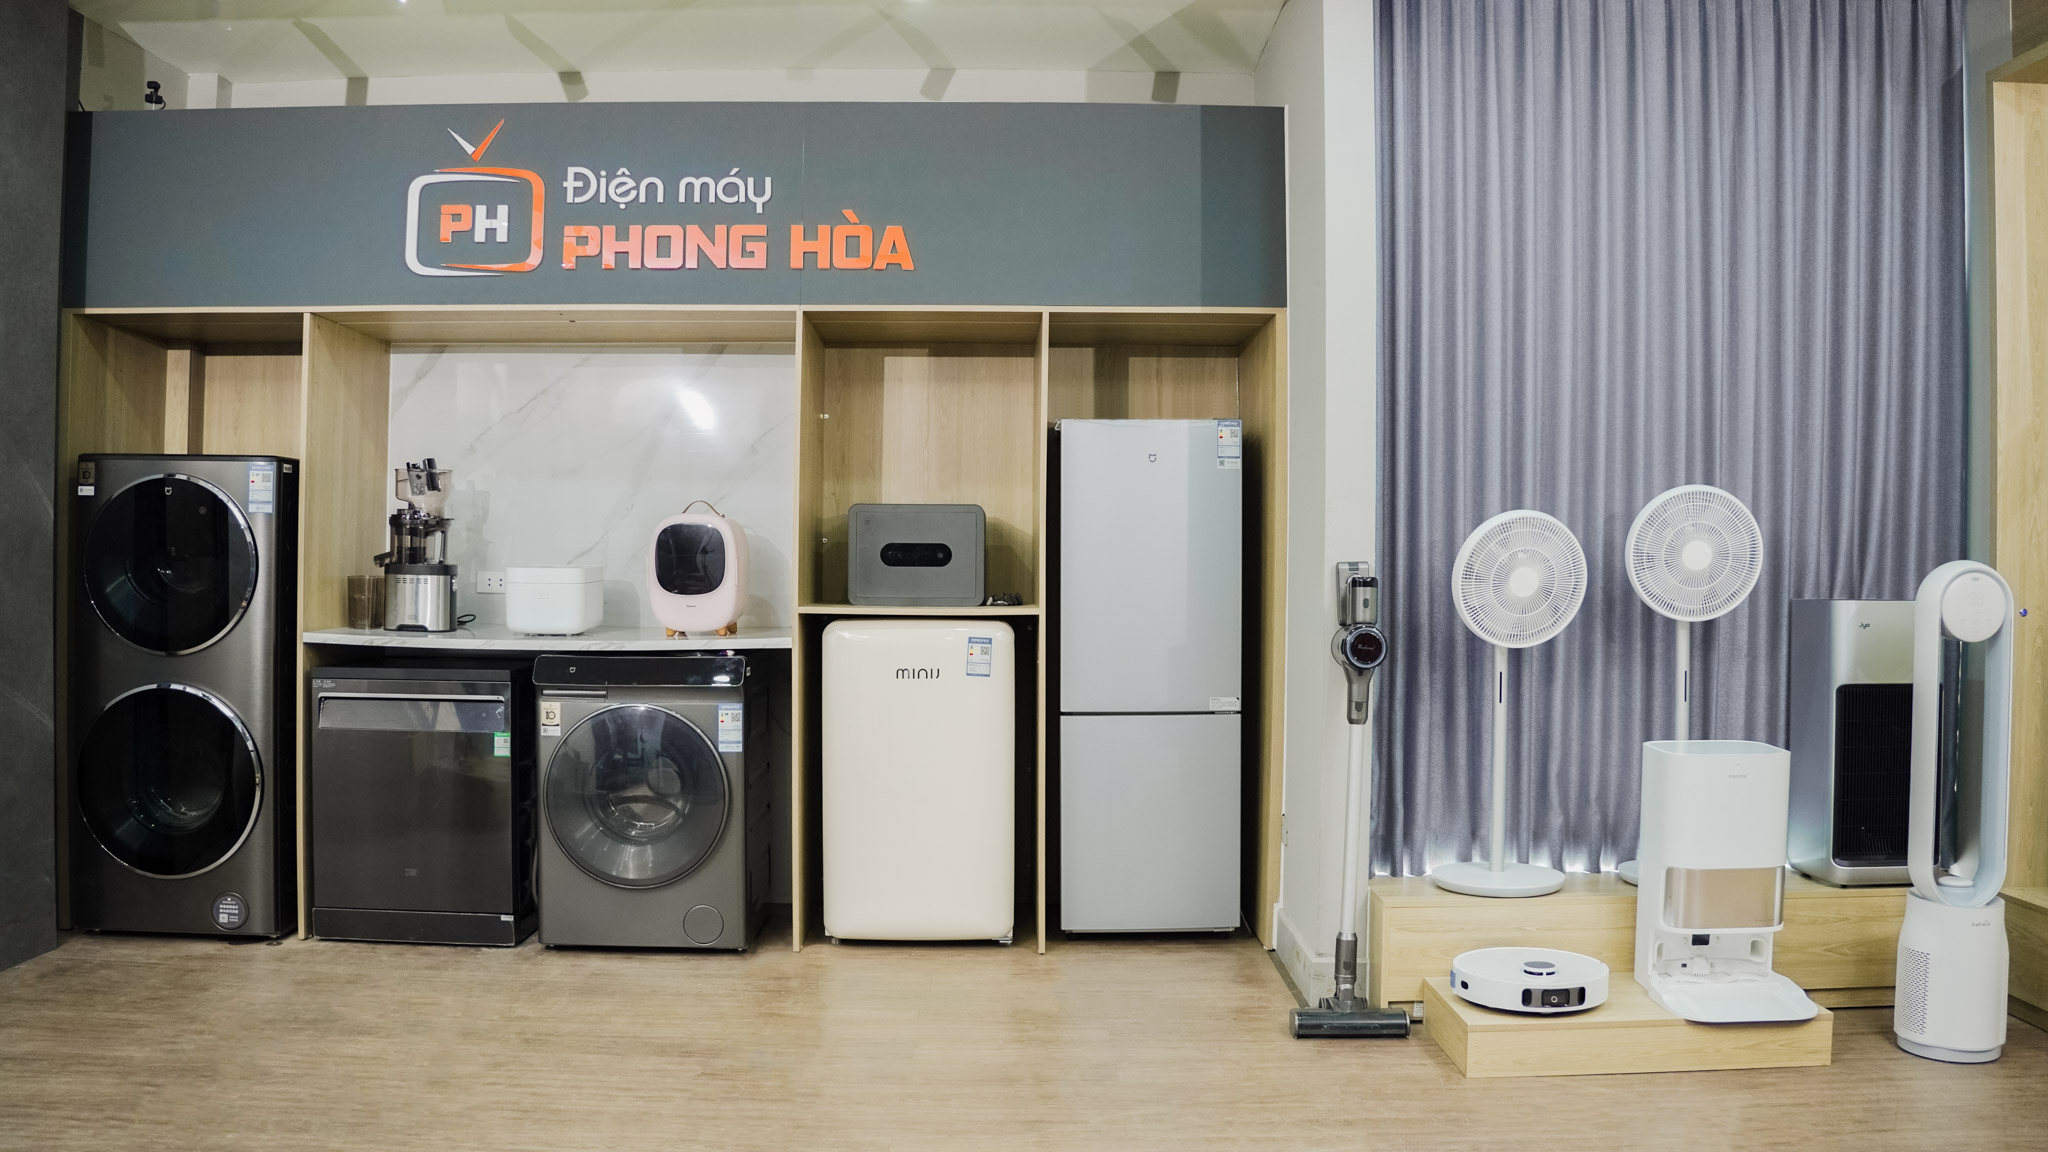 Phong Hòa cung cấp các sản phẩm điện máy, gia dụng chính hãng